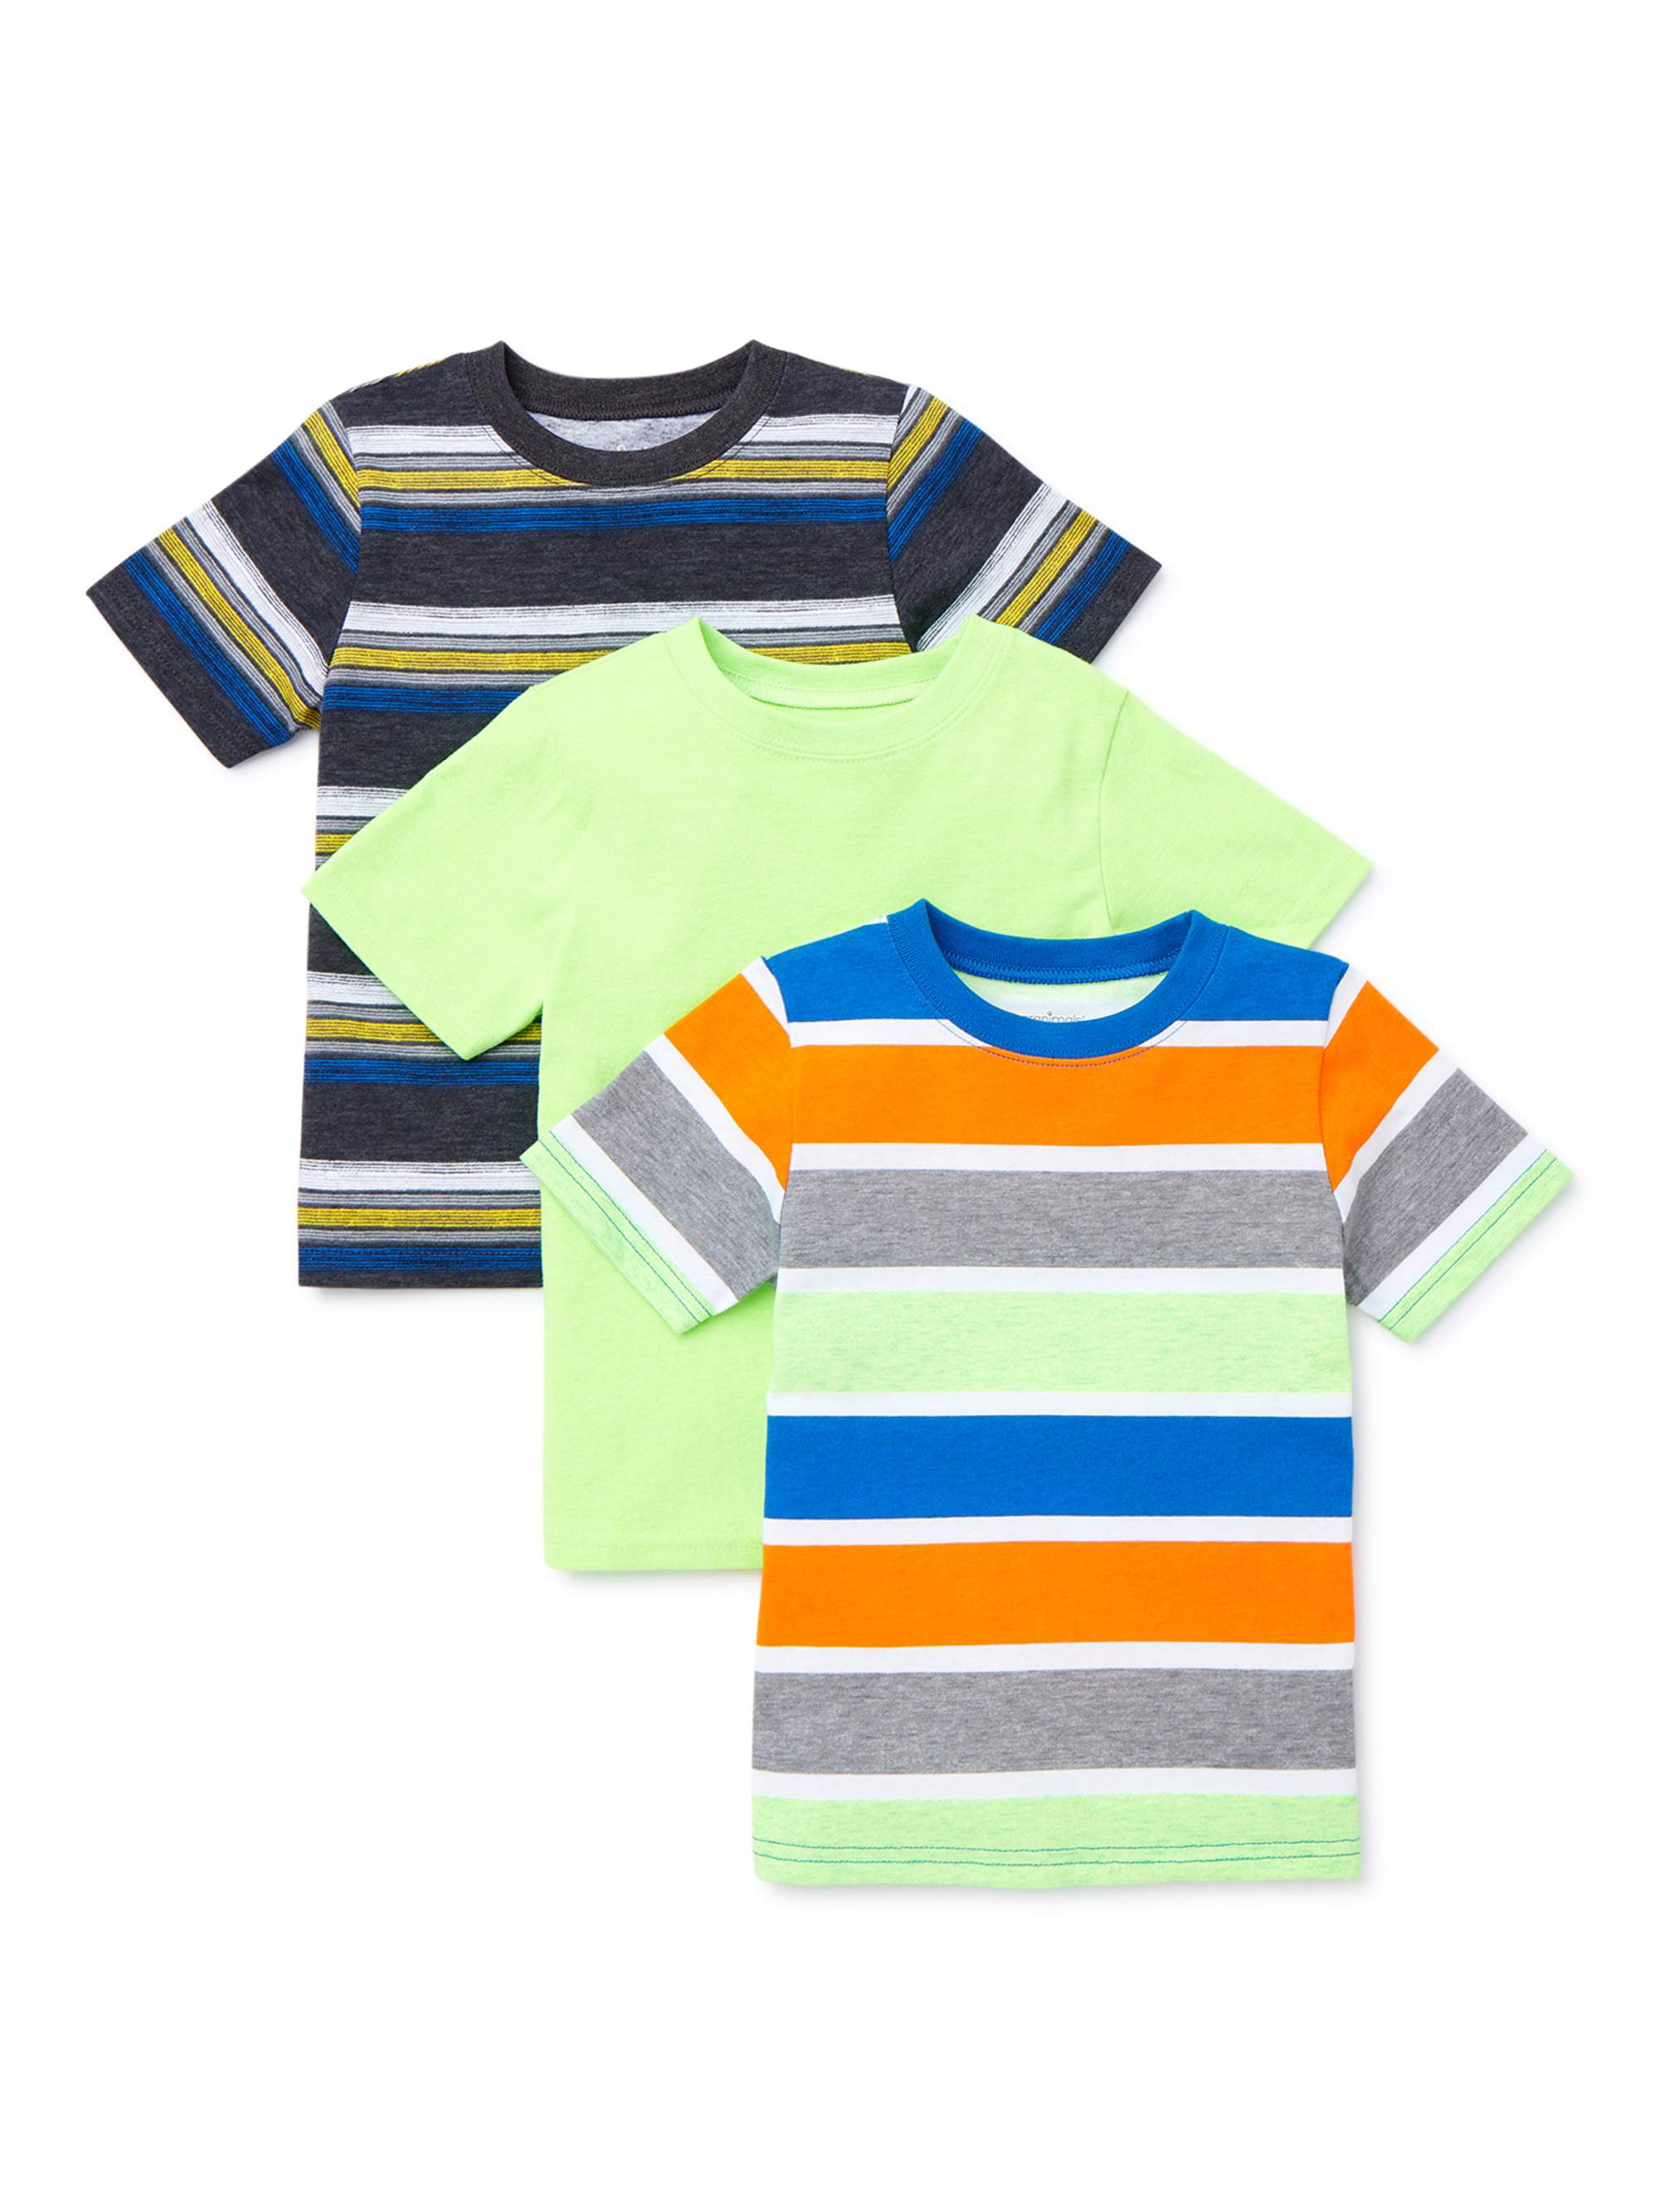 Garanimals Baby Boy & Toddler Boy Stripe & Solid T-Shirts, 3-Pack (12M ...